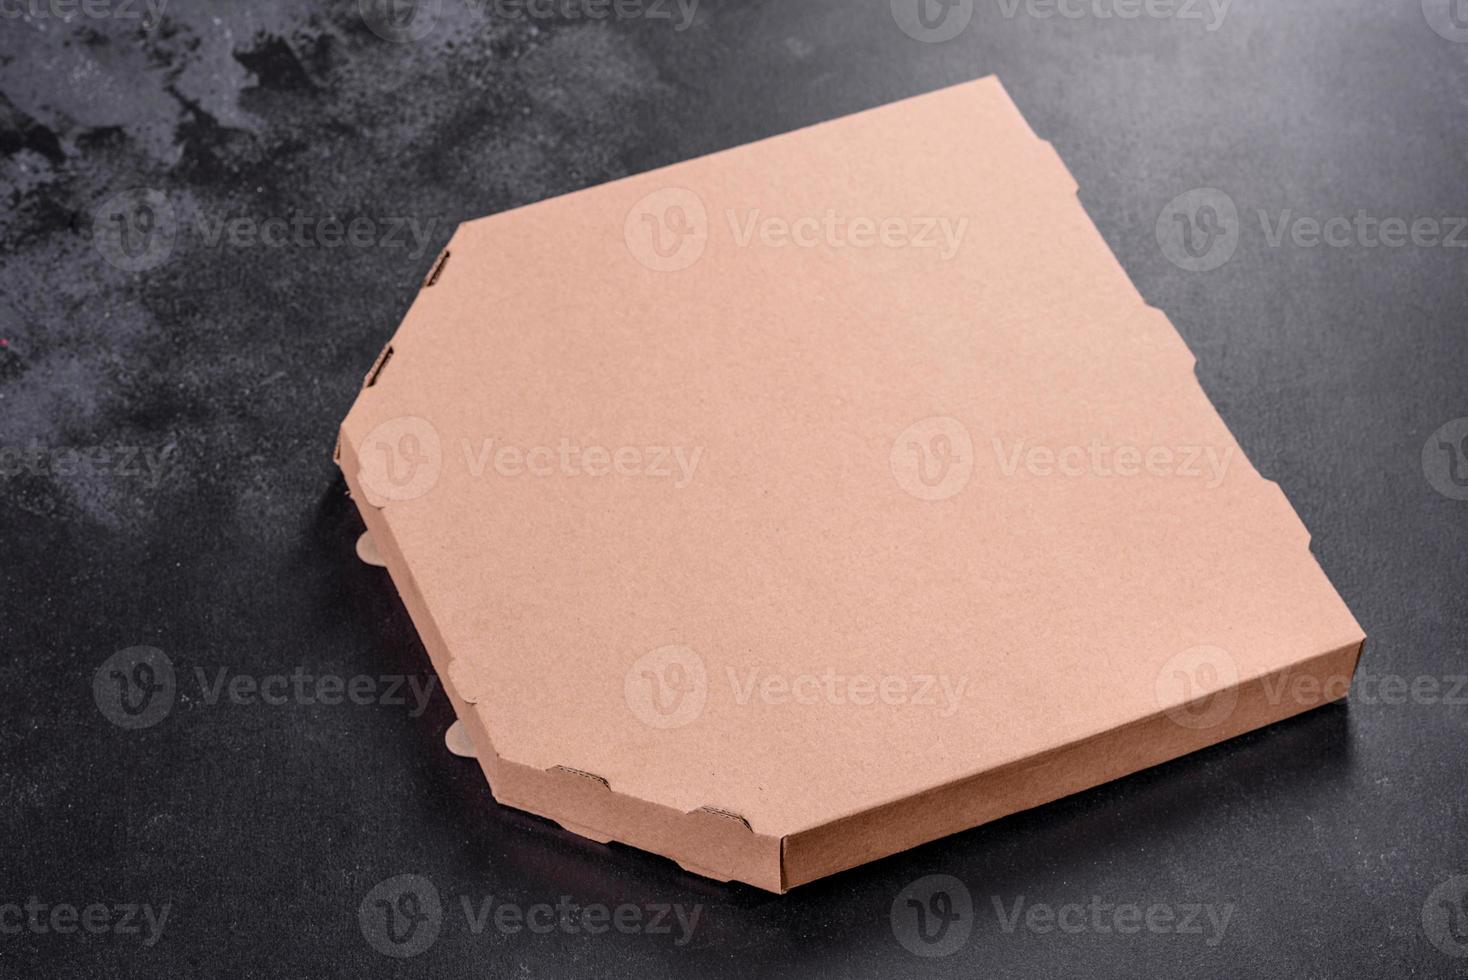 boîte brune en carton de forme carrée pour le transport et la livraison de pizza photo